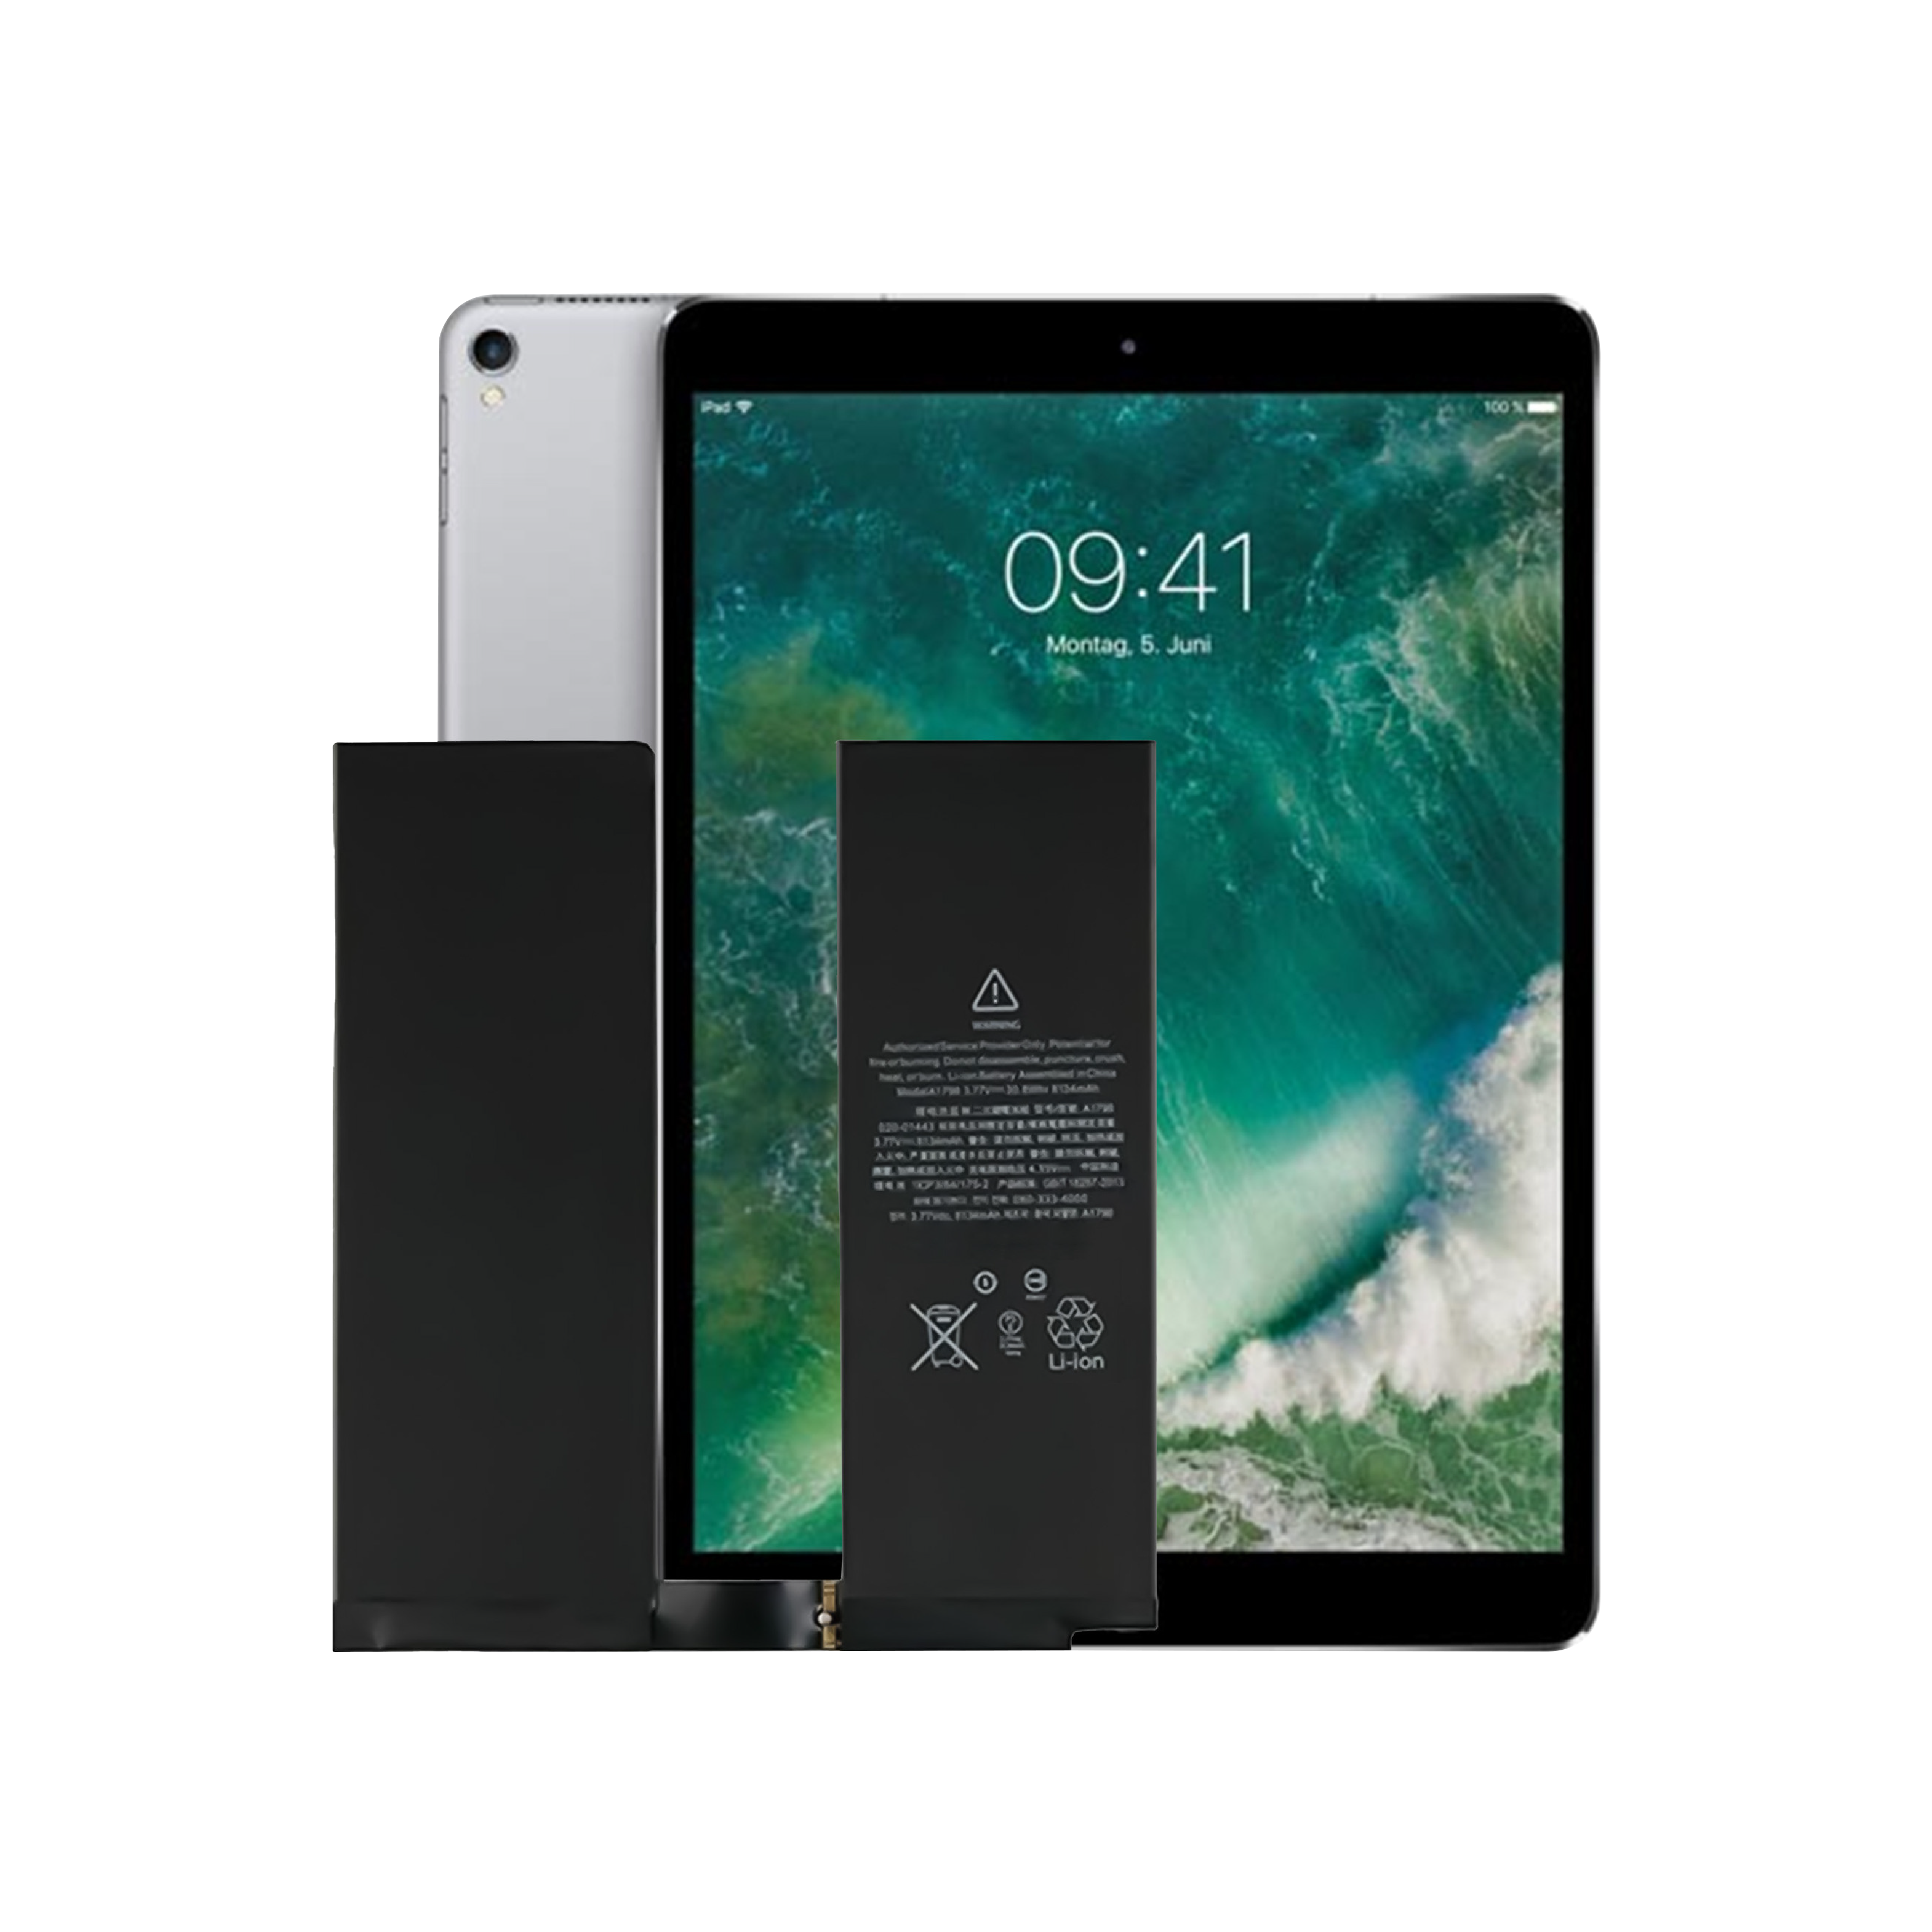 Batería interna de tableta de 0 ciclos OEM de alta calidade para batería de Apple iPad Air 3